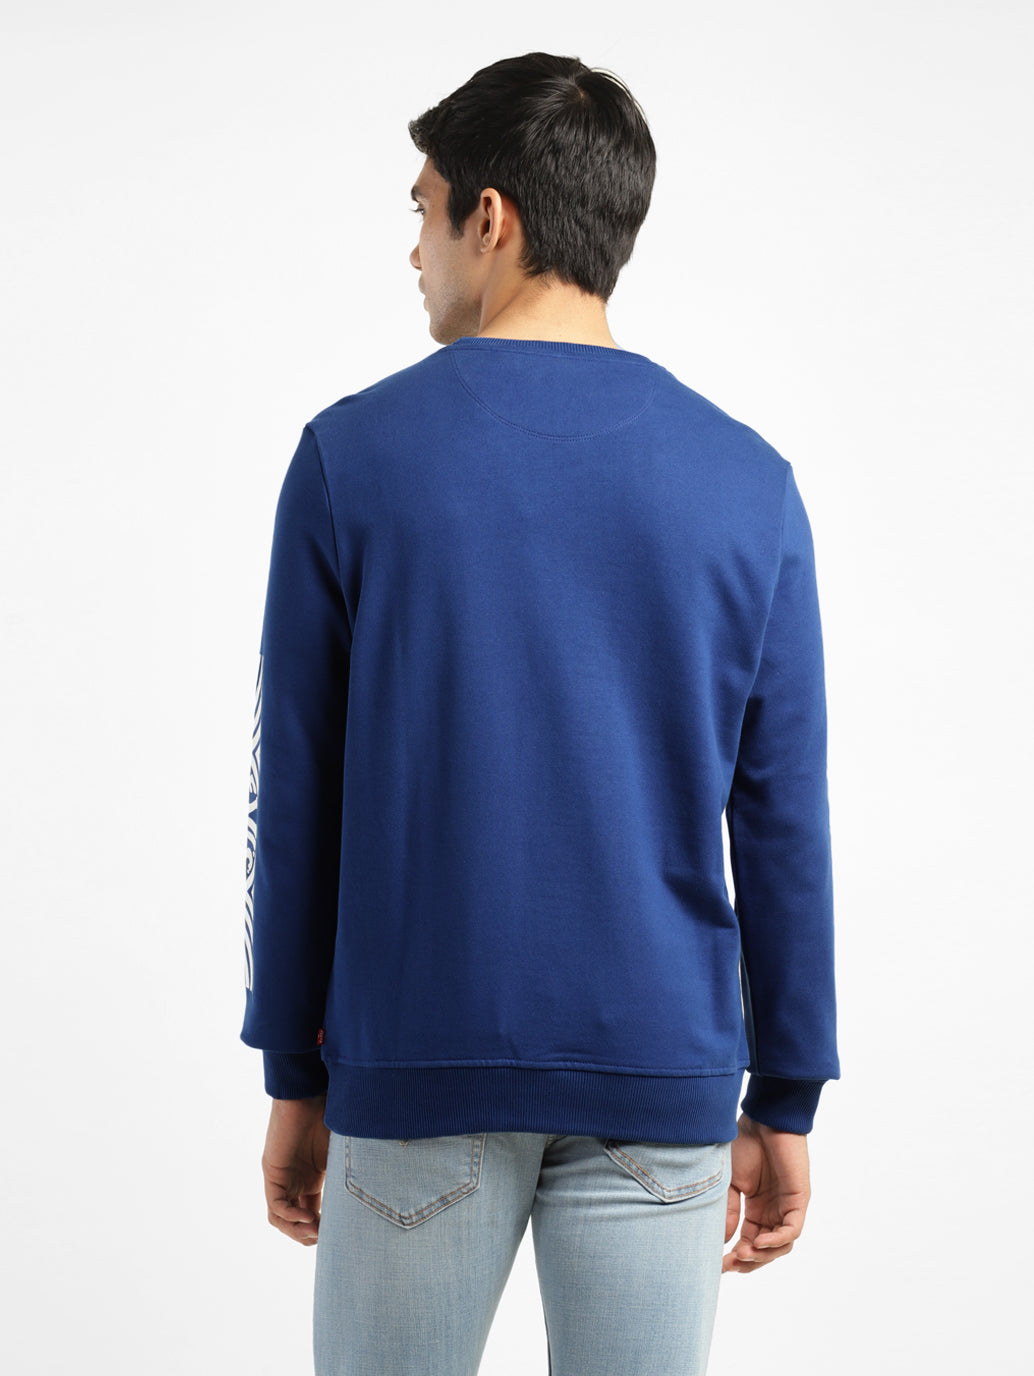 Men's Solid Blue Crew Neck Sweatshirt